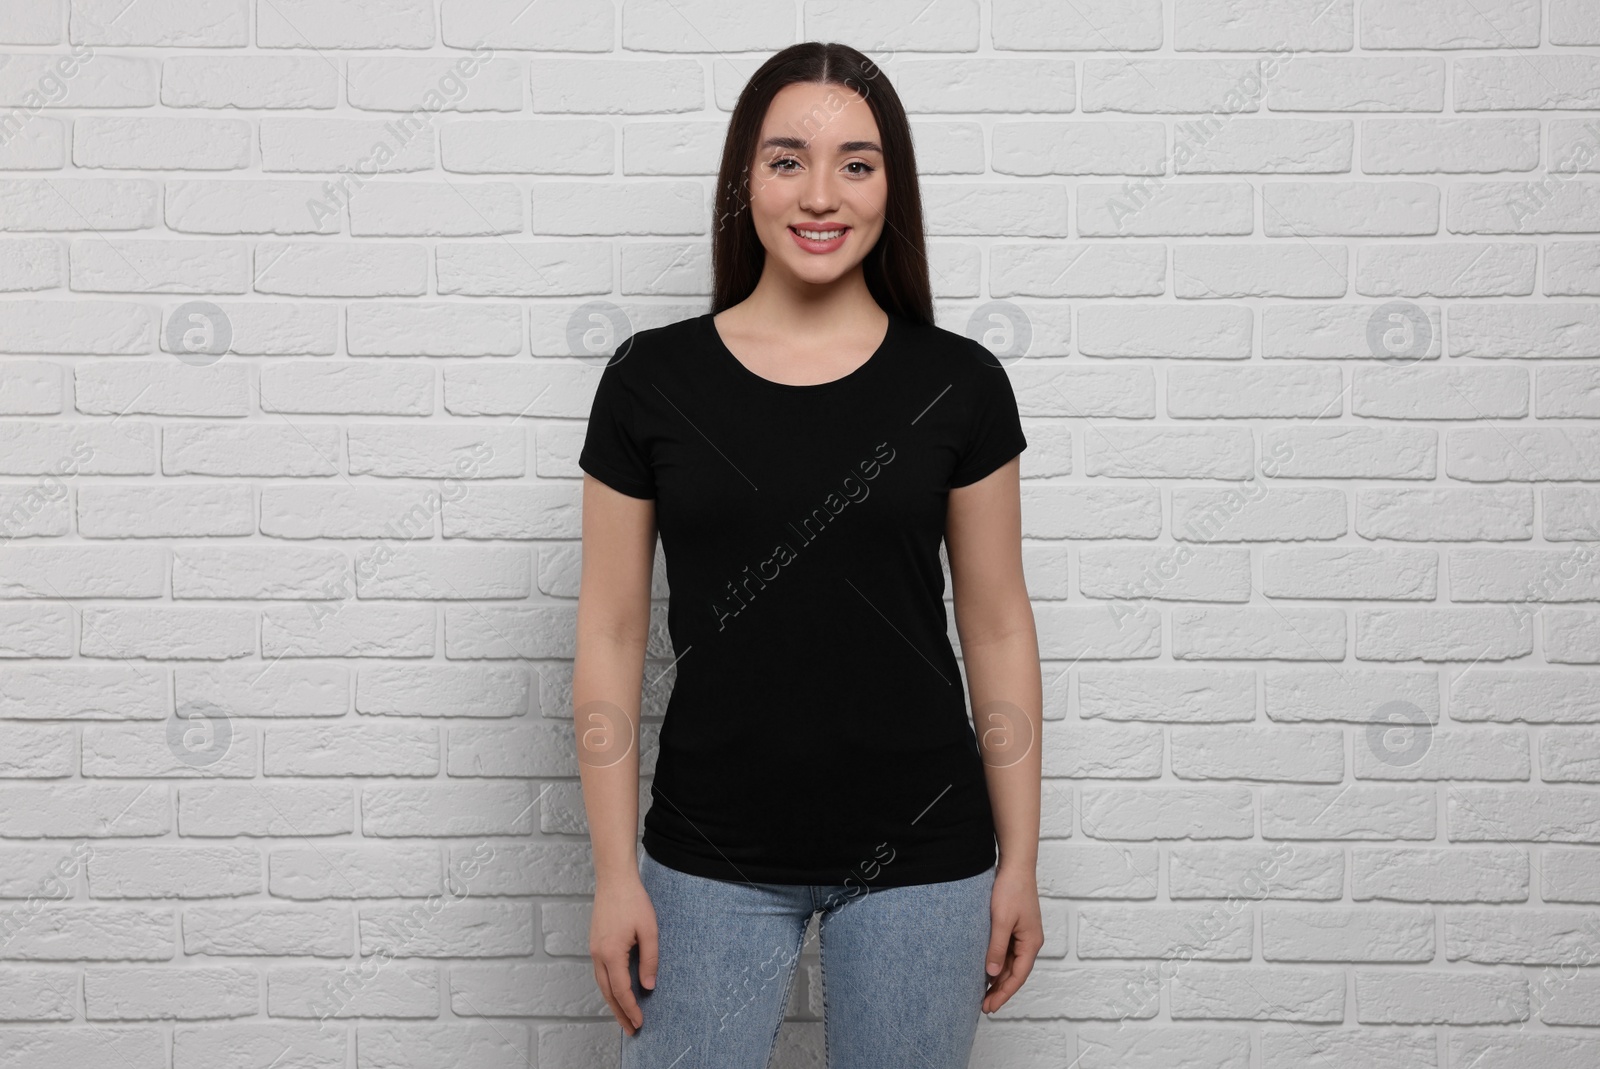 Photo of Woman wearing stylish black T-shirt near white brick wall